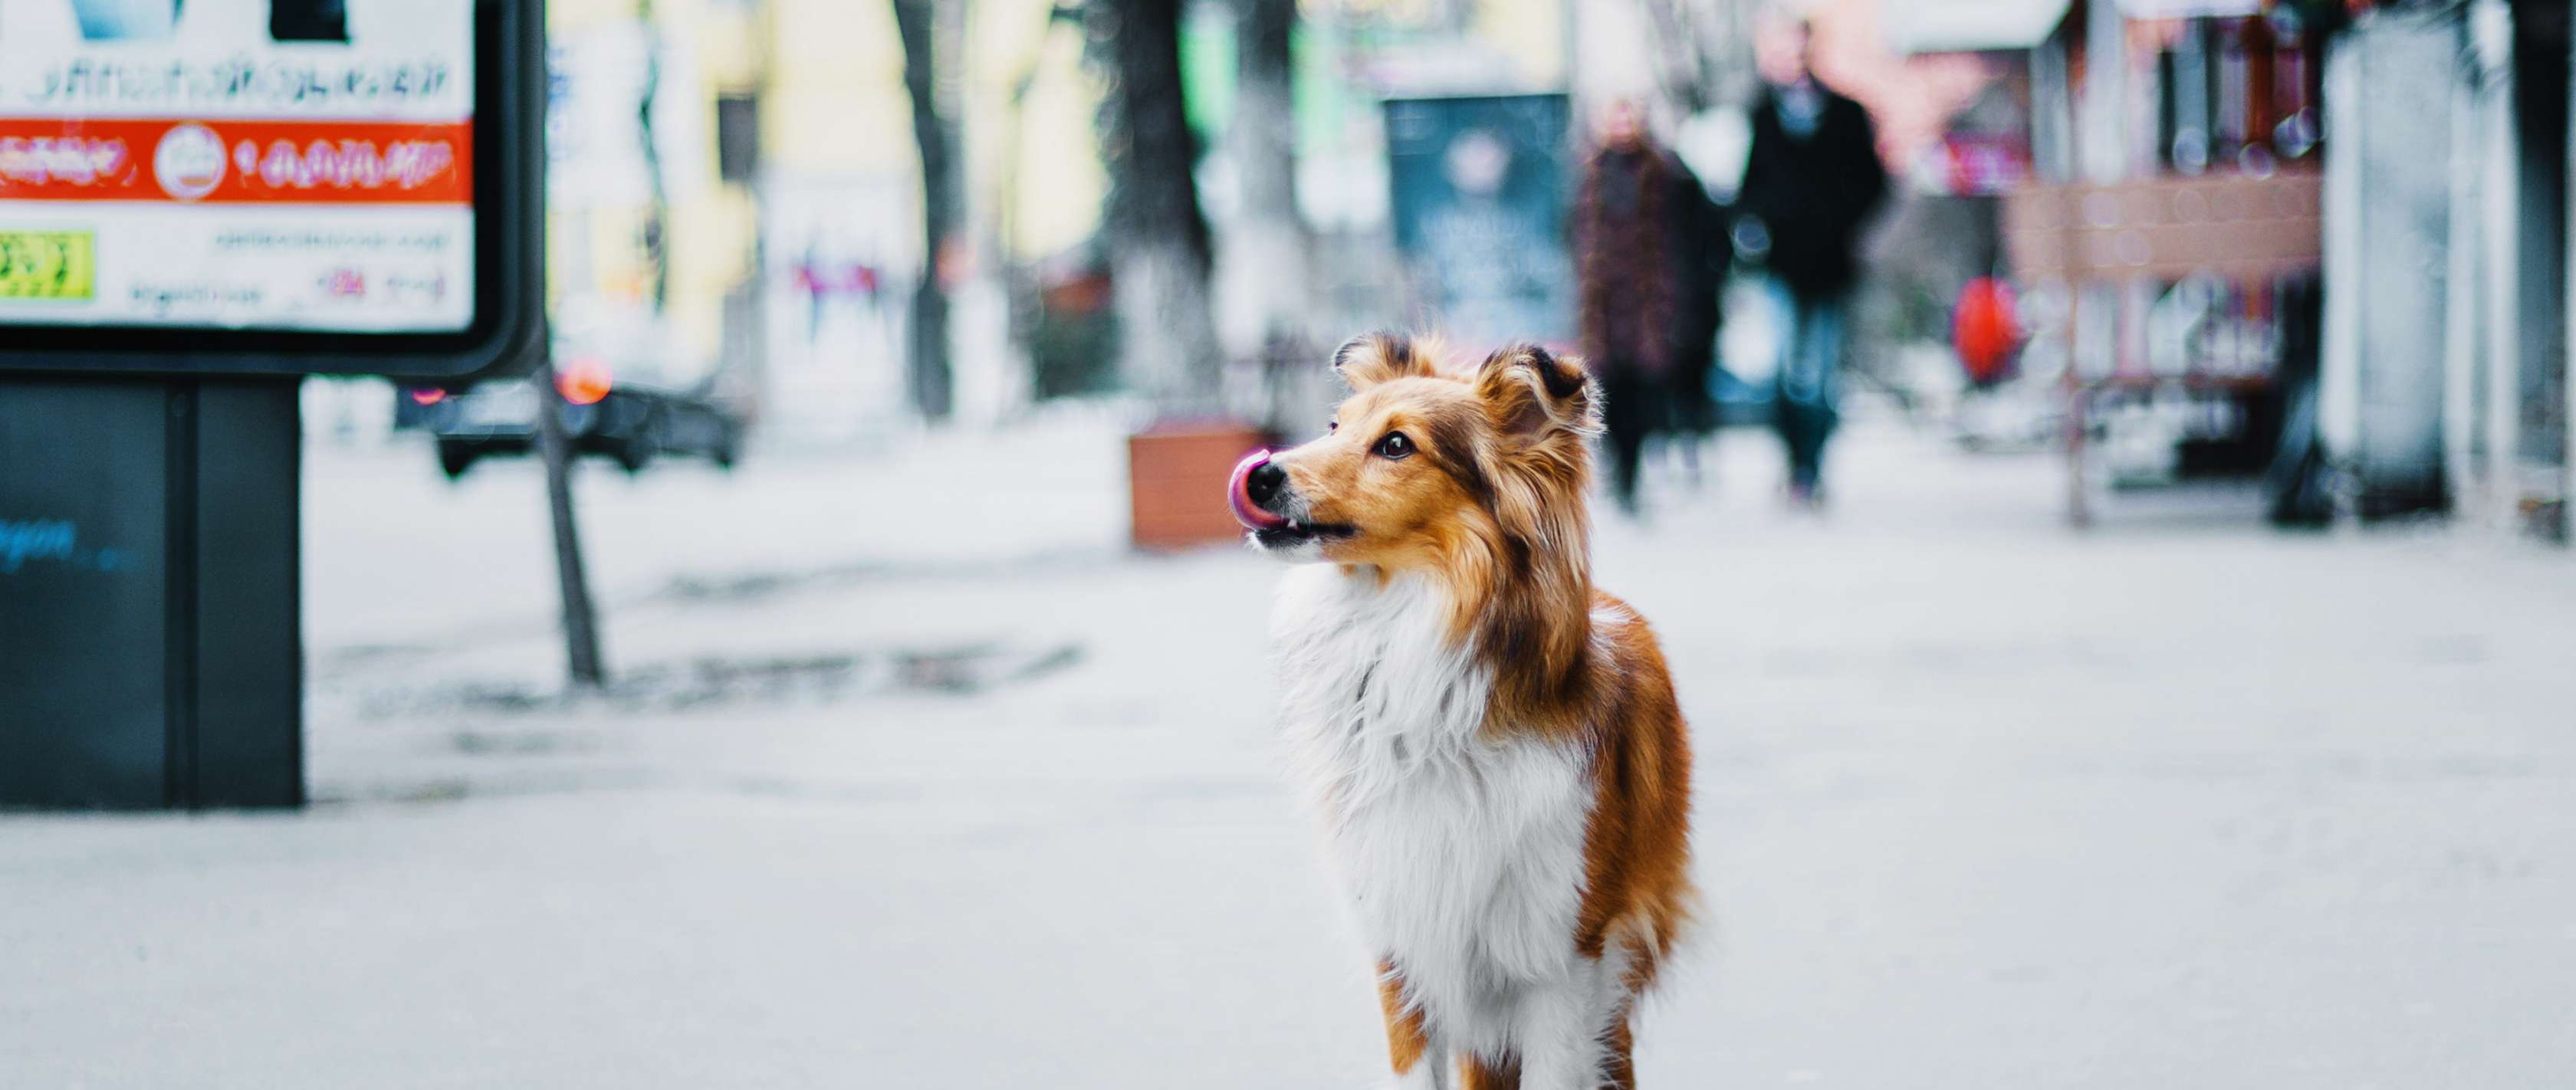 Ein Hund läuft ohne Leine alleine durch eine Stadt